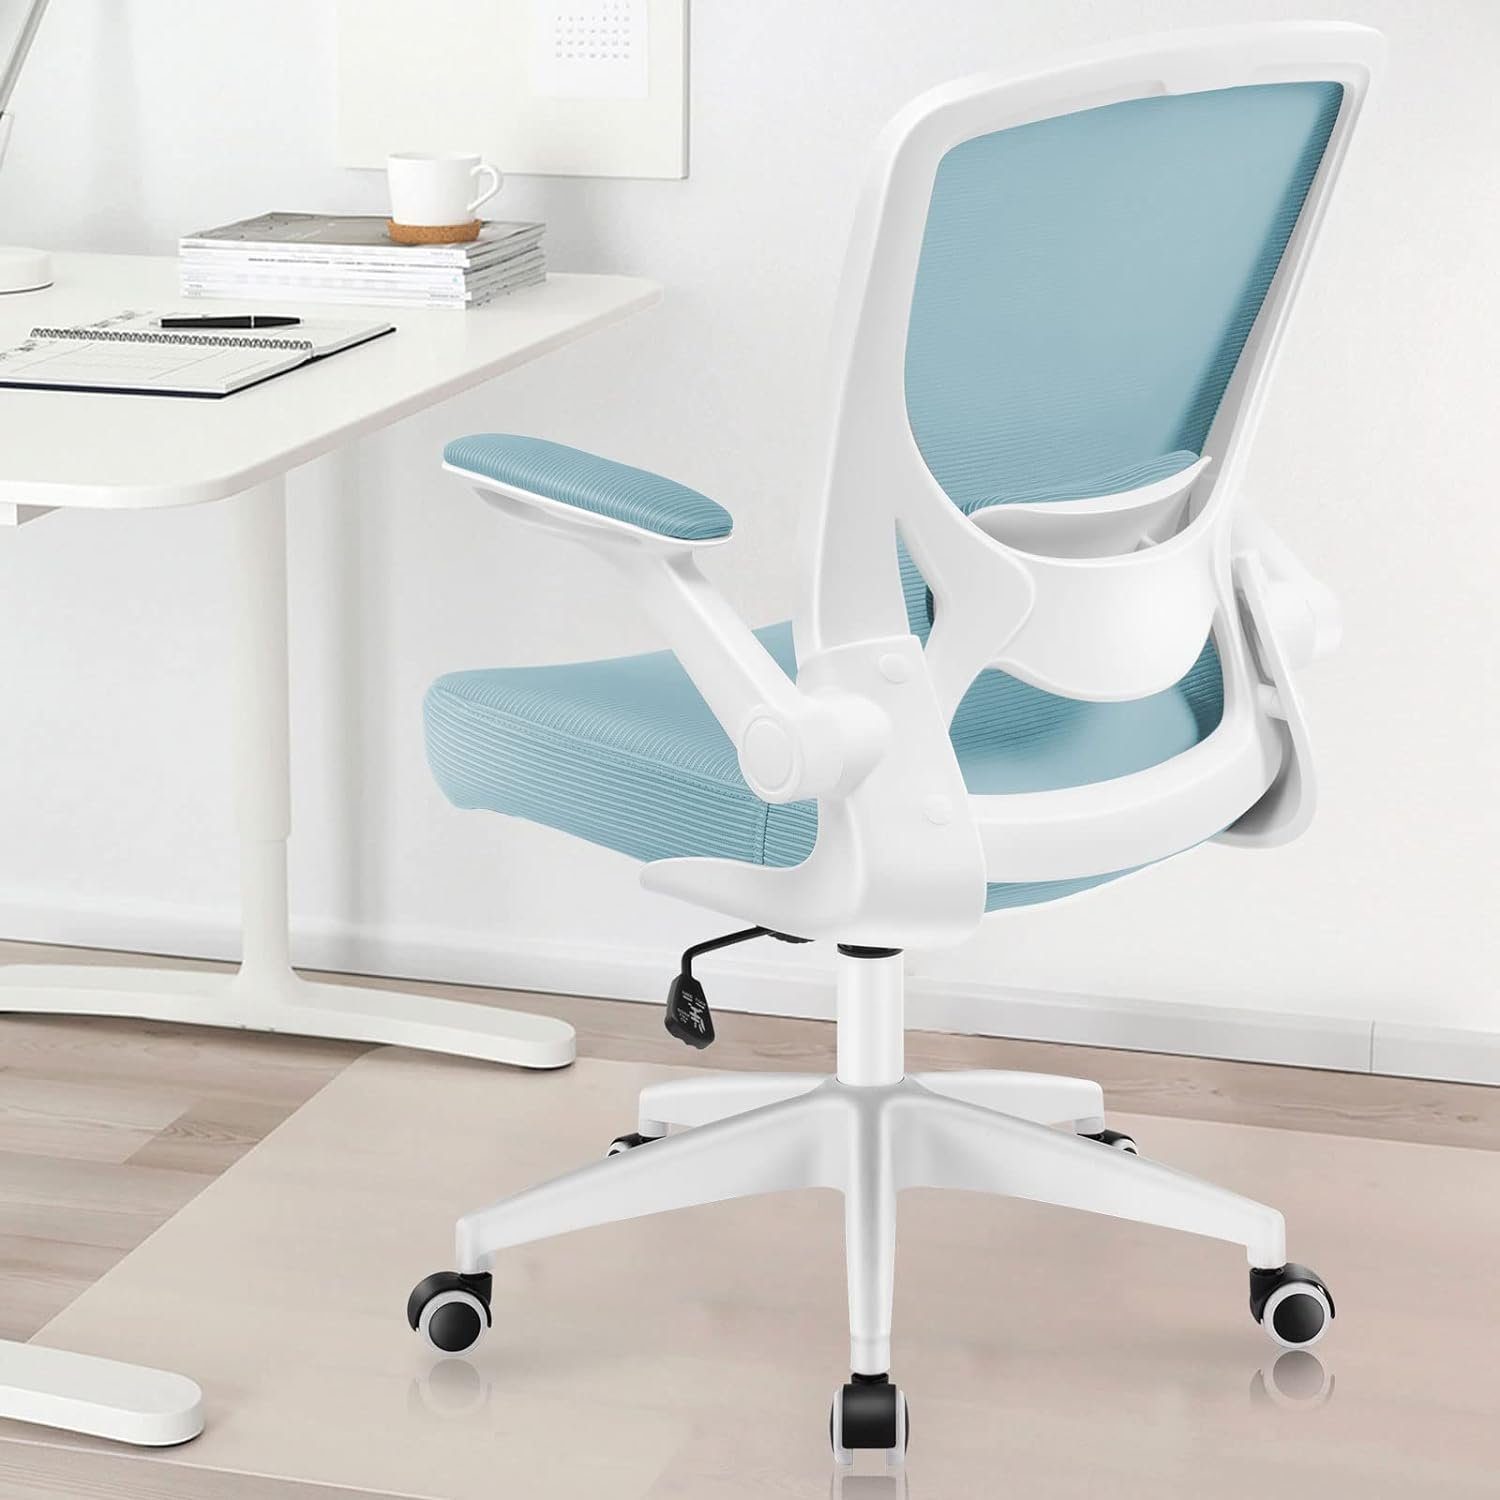 KERDOM Bürostuhl (Bürostuhl ergonomisch: Schreibtischstuhl mit verstellbarem Sitz), Bürostuhl, Ergonomischer Schreibtischstuhl mit Klappbaren Armlehnen